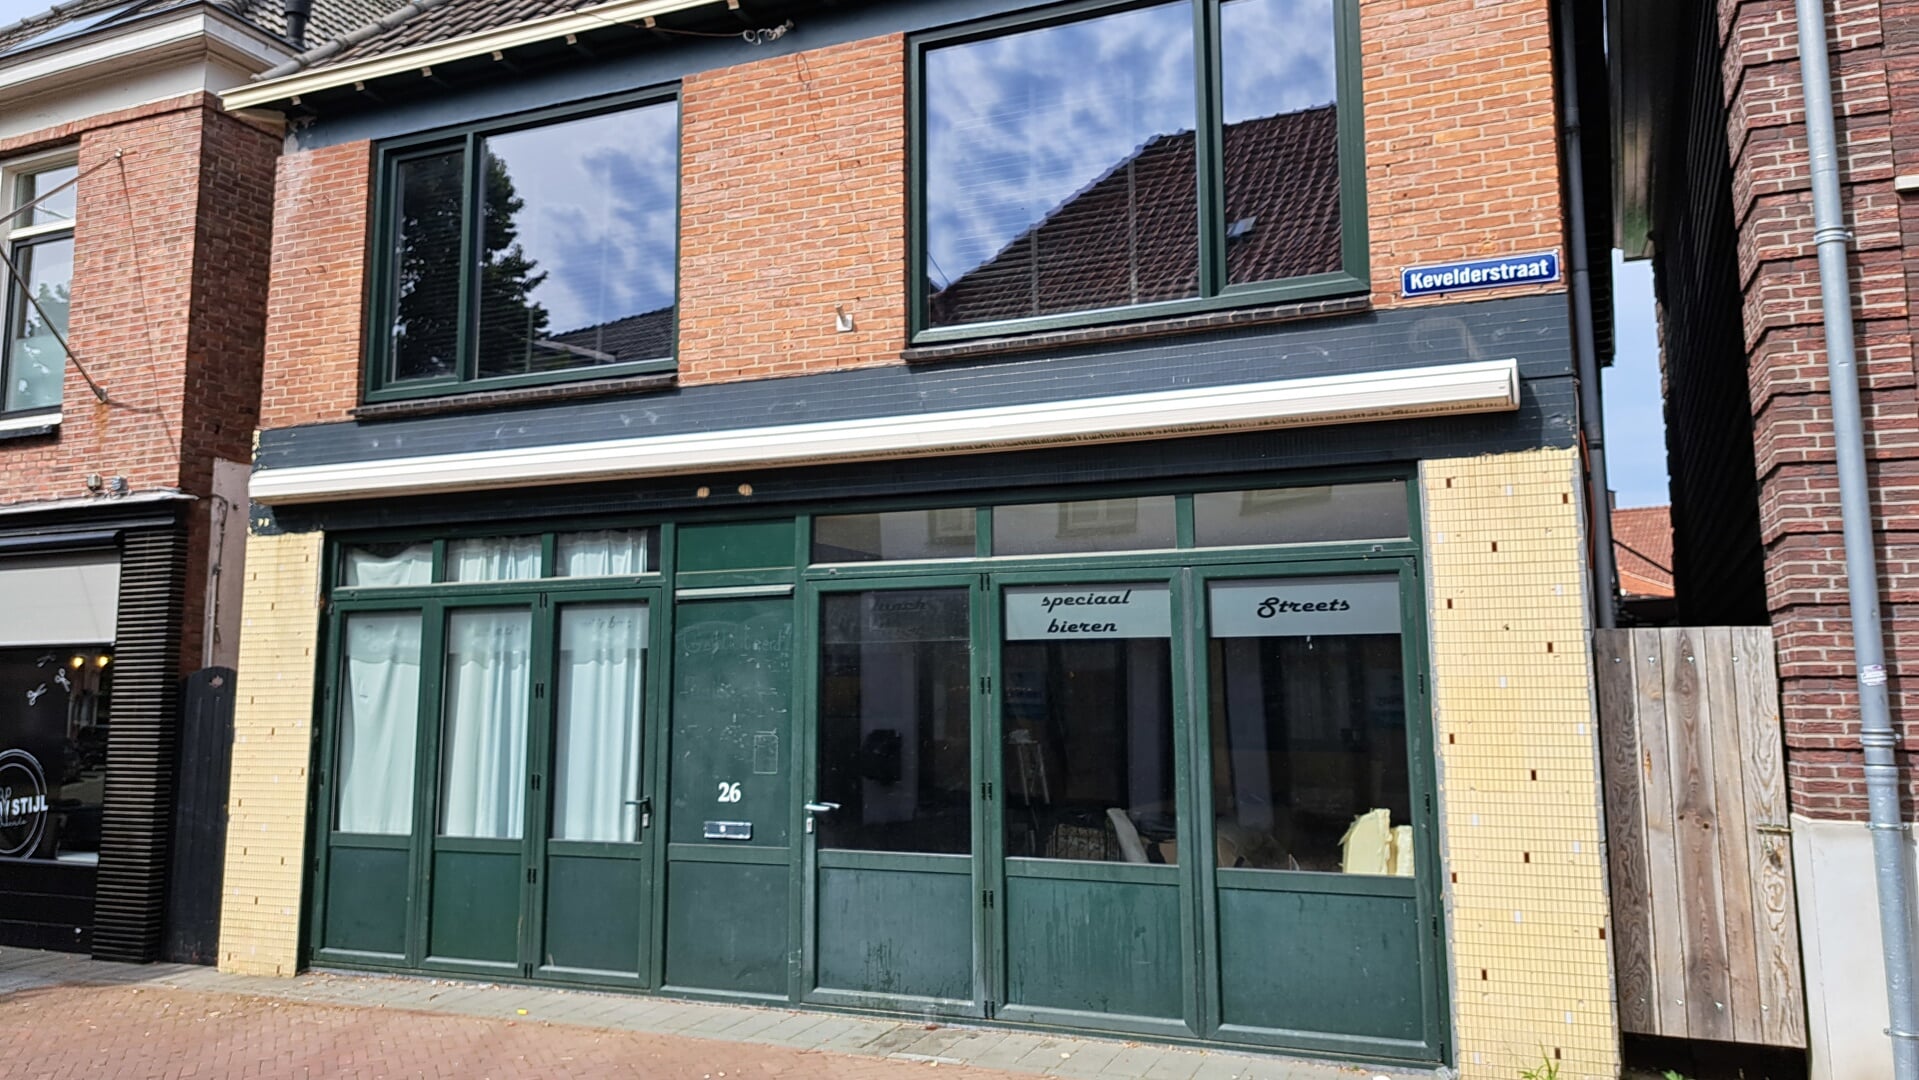 Het voormalige café Streets aan de Kevelderstraat mag een woonhuis worden, zo meldt de gemeente. Foto: Kyra Broshuis